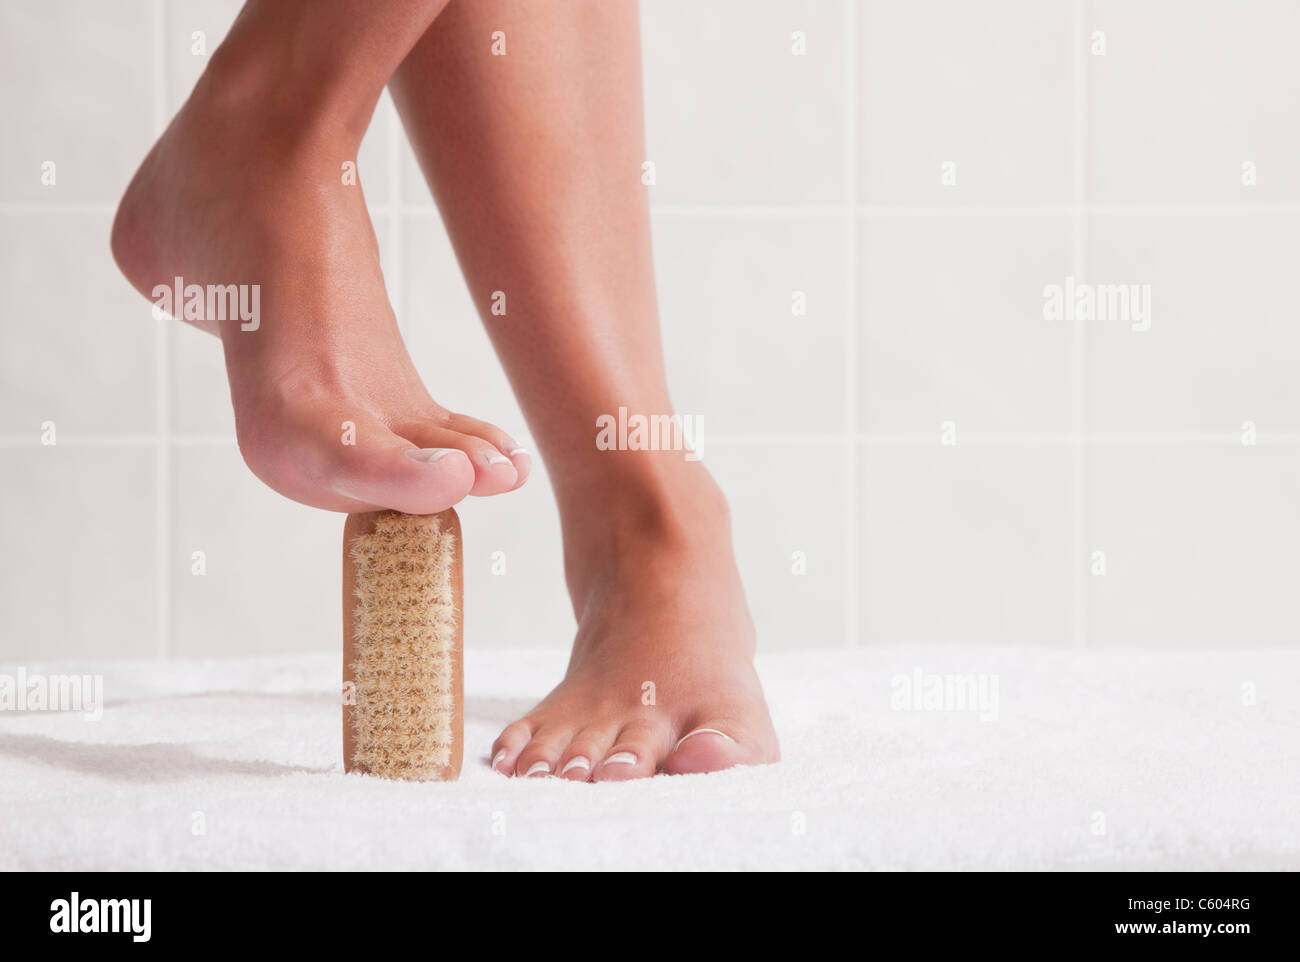 Estados Unidos, Illinois, Metamora, mujer de pie con cepillo de uñas bajo los pies Foto de stock